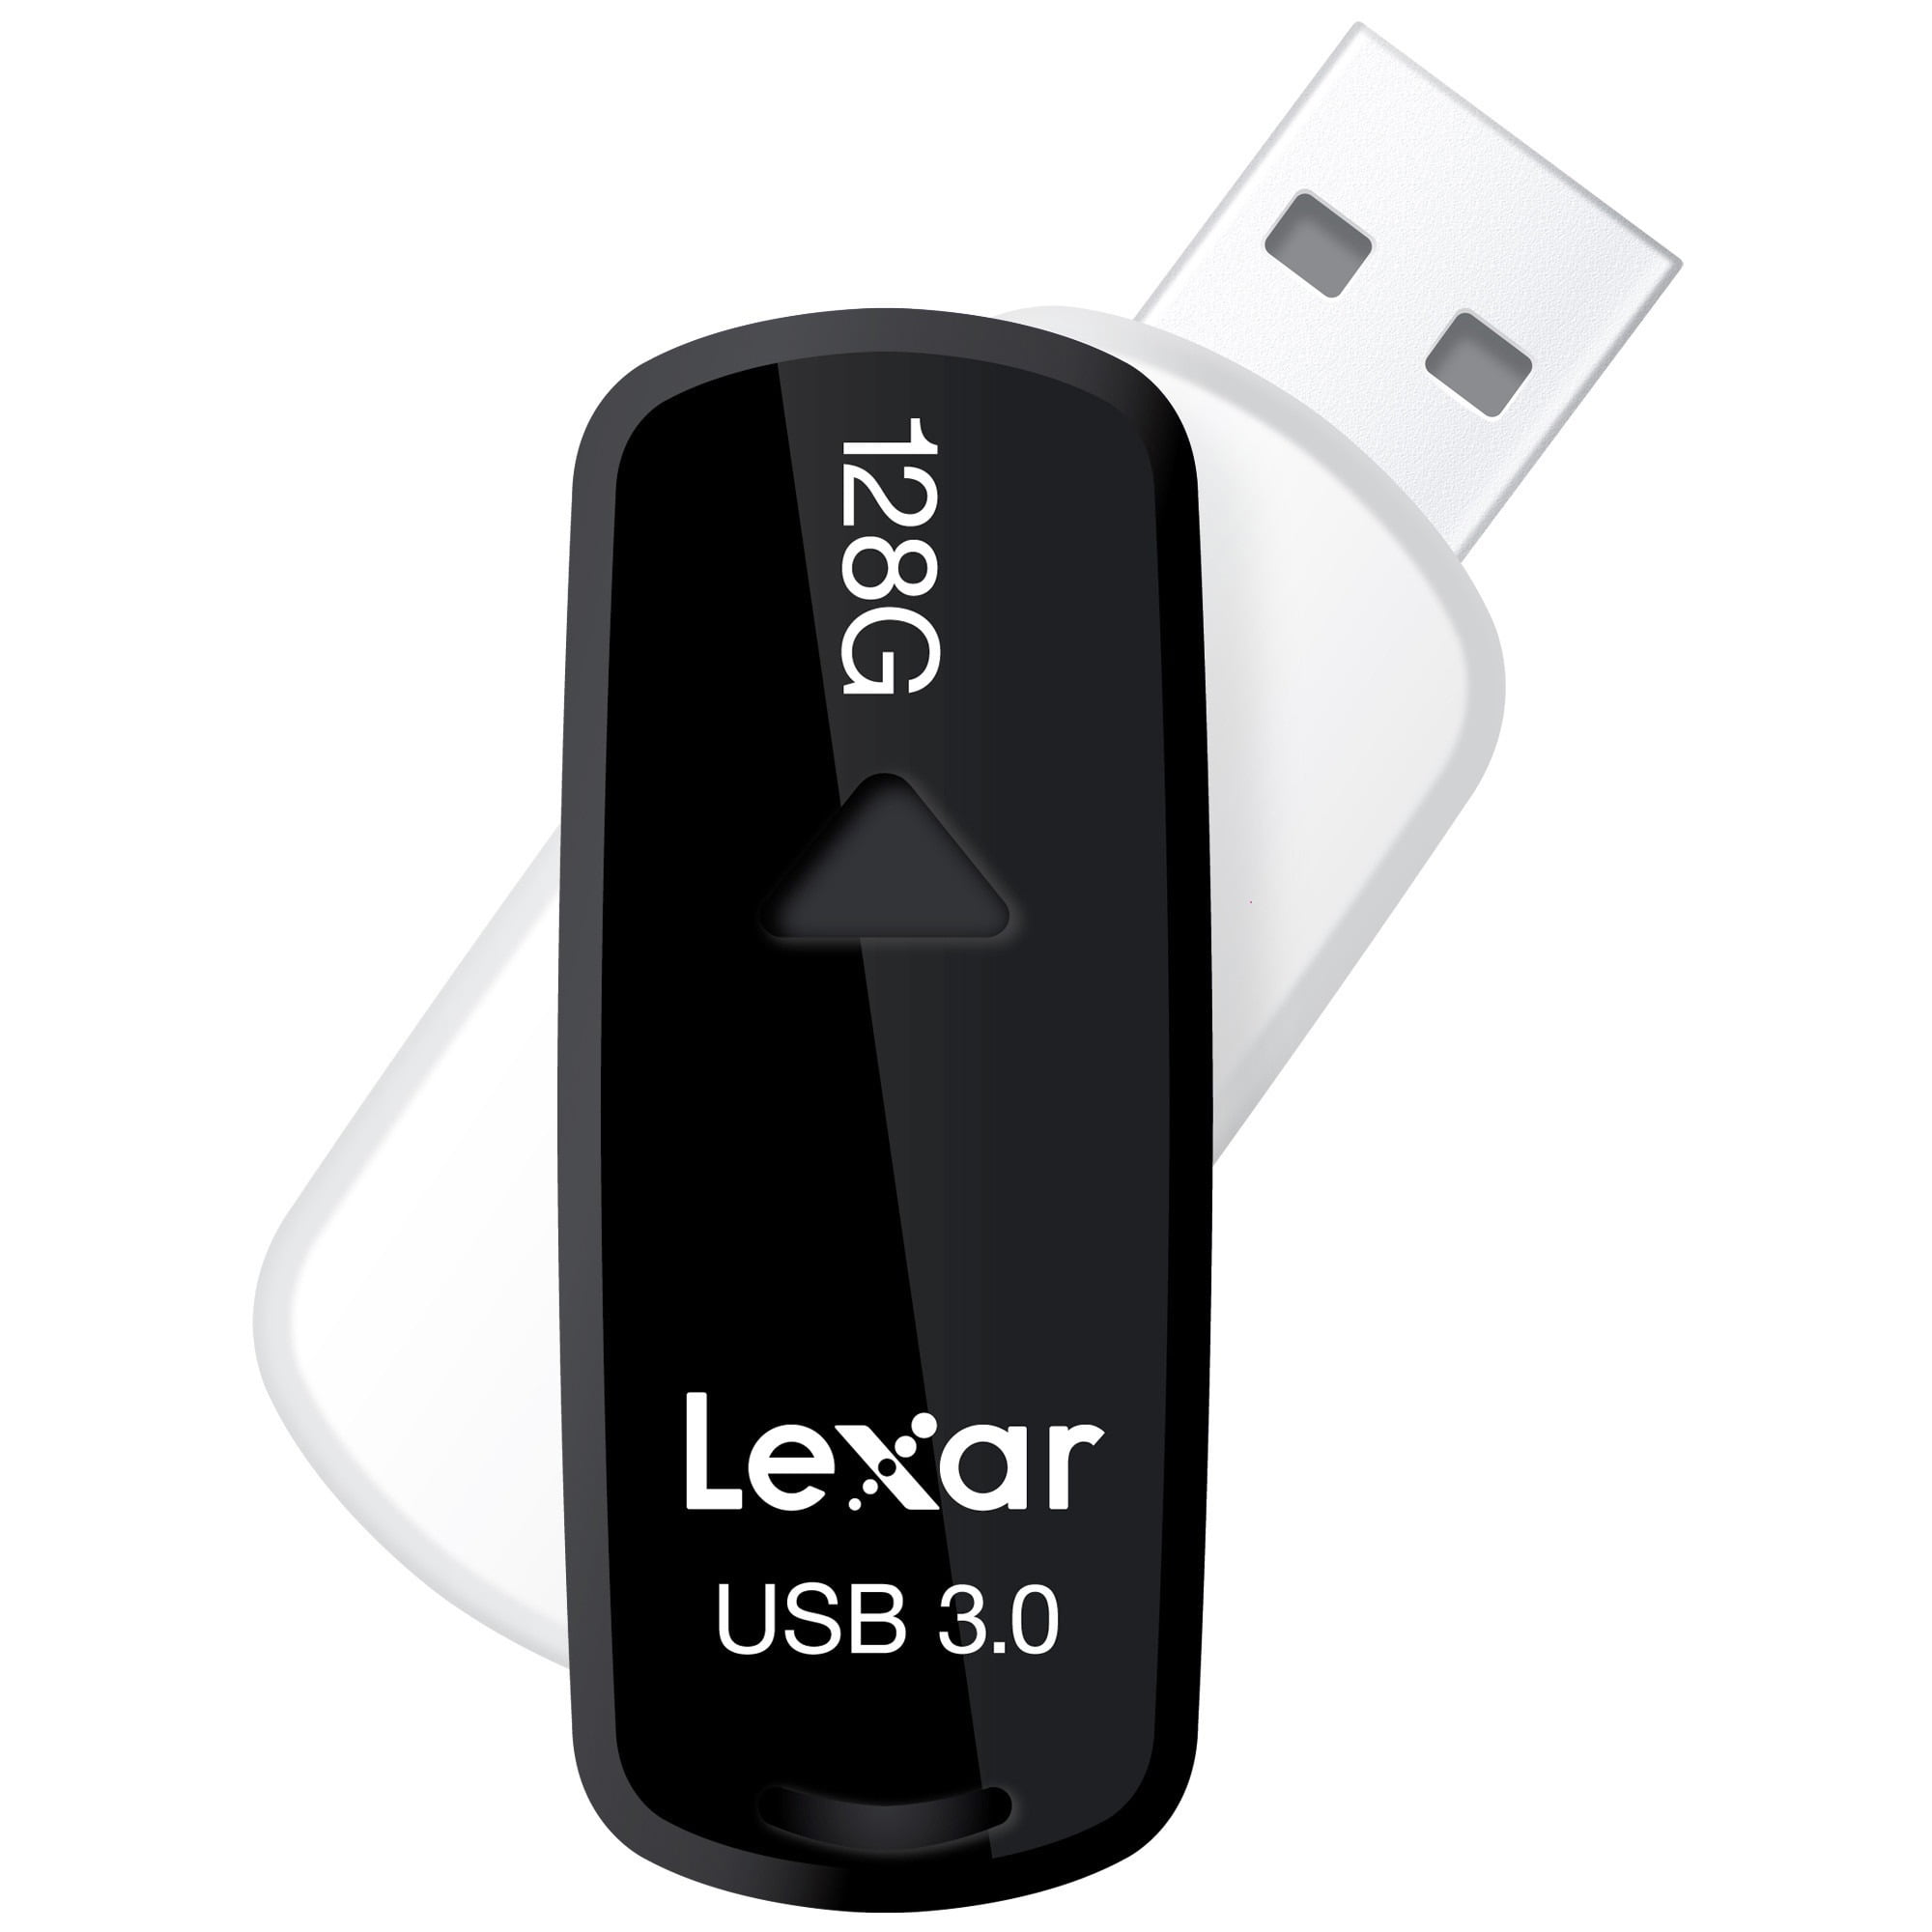 Lexar JumpDrive S35 - USB flash drive - 128 GB - USB 3.0 - black Walmart.com